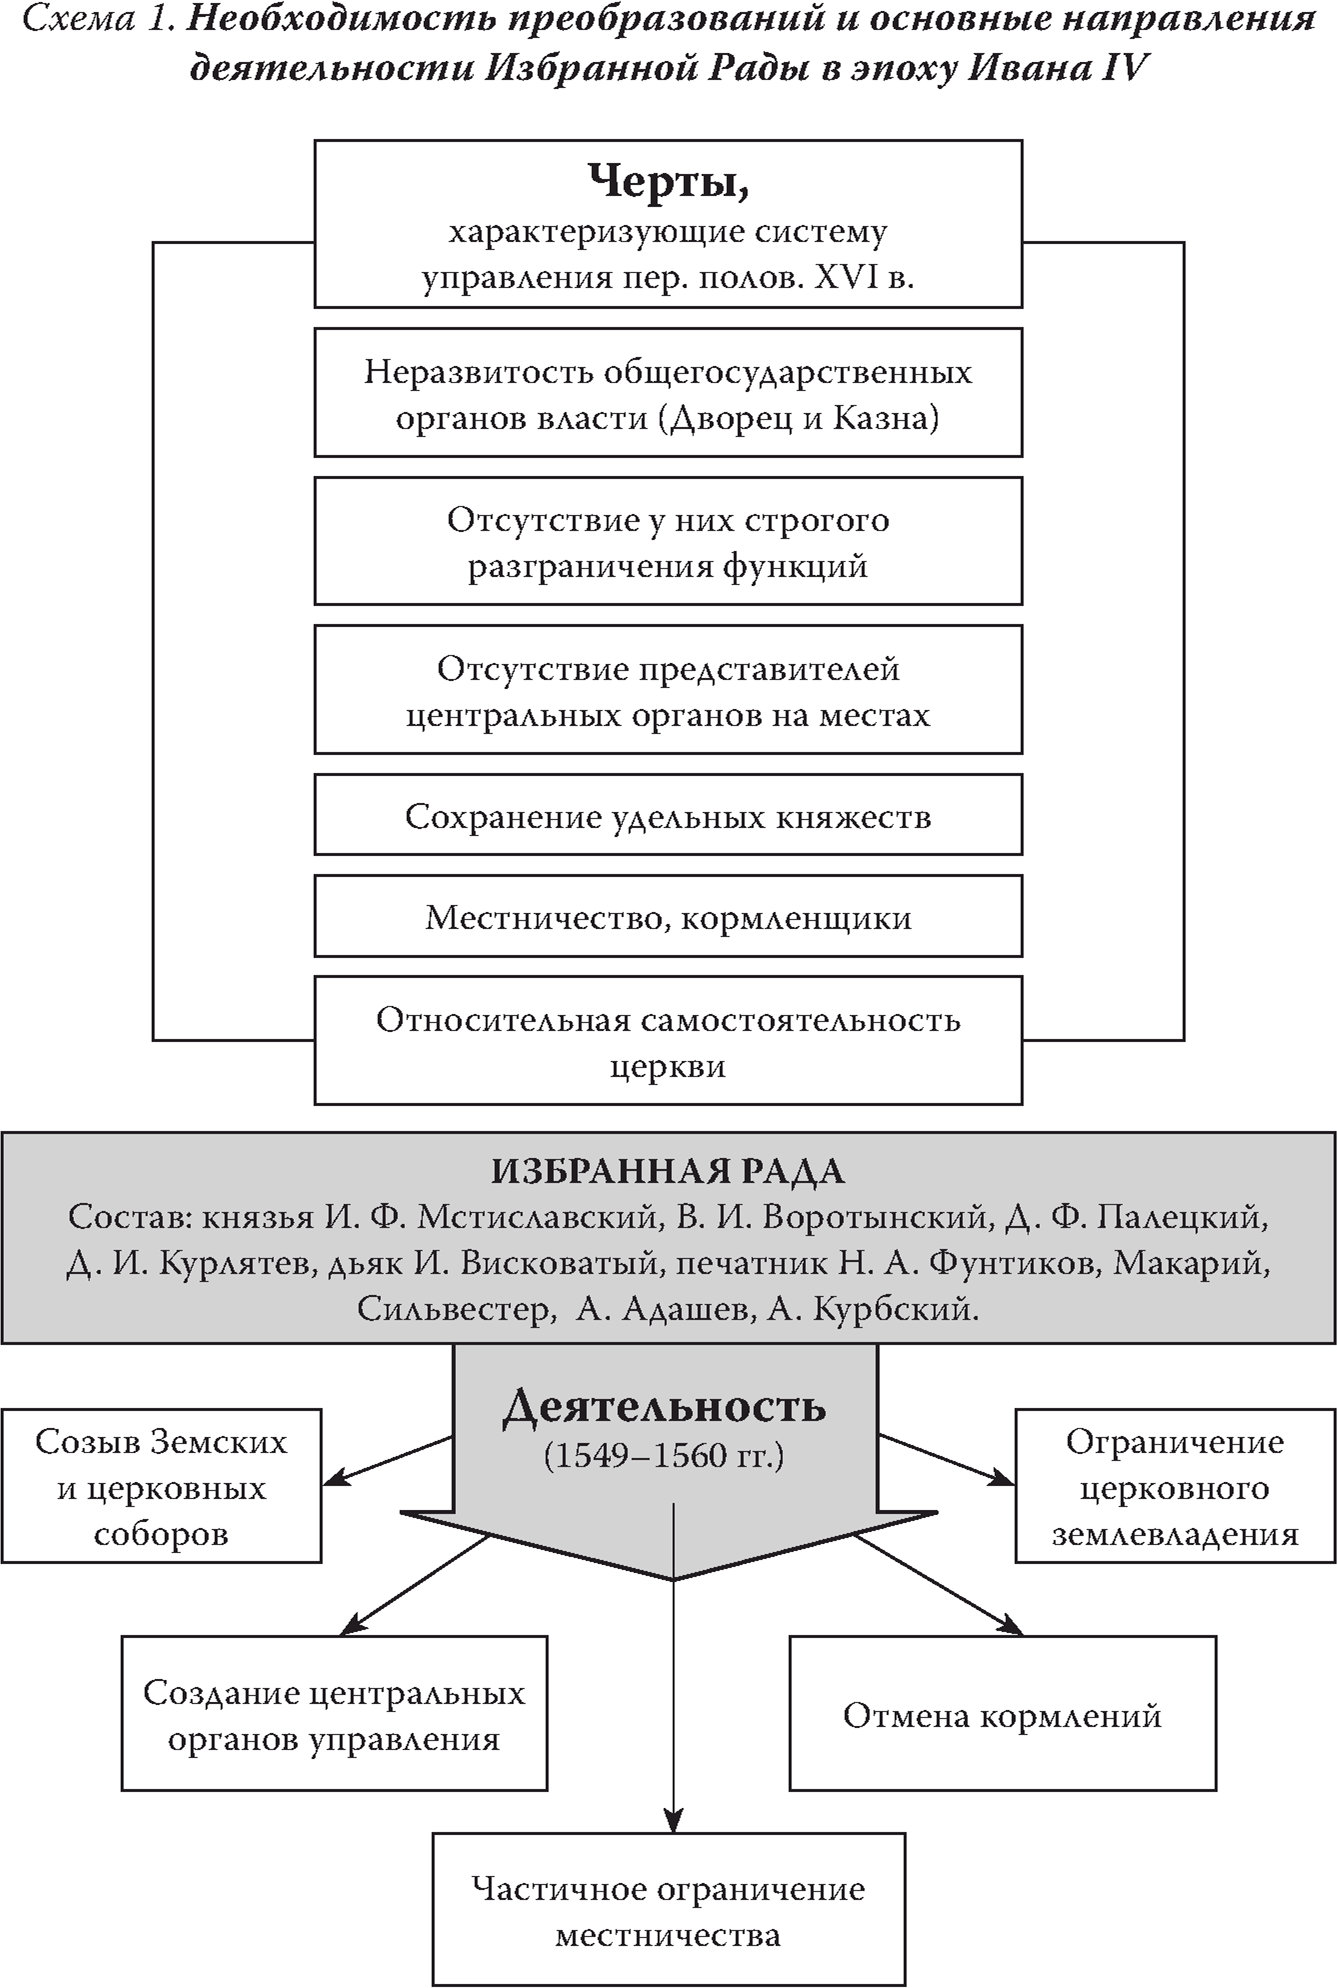 Необходимость преобразований и основные направления деятельности Избранной Рады в эпоху Ивана IV